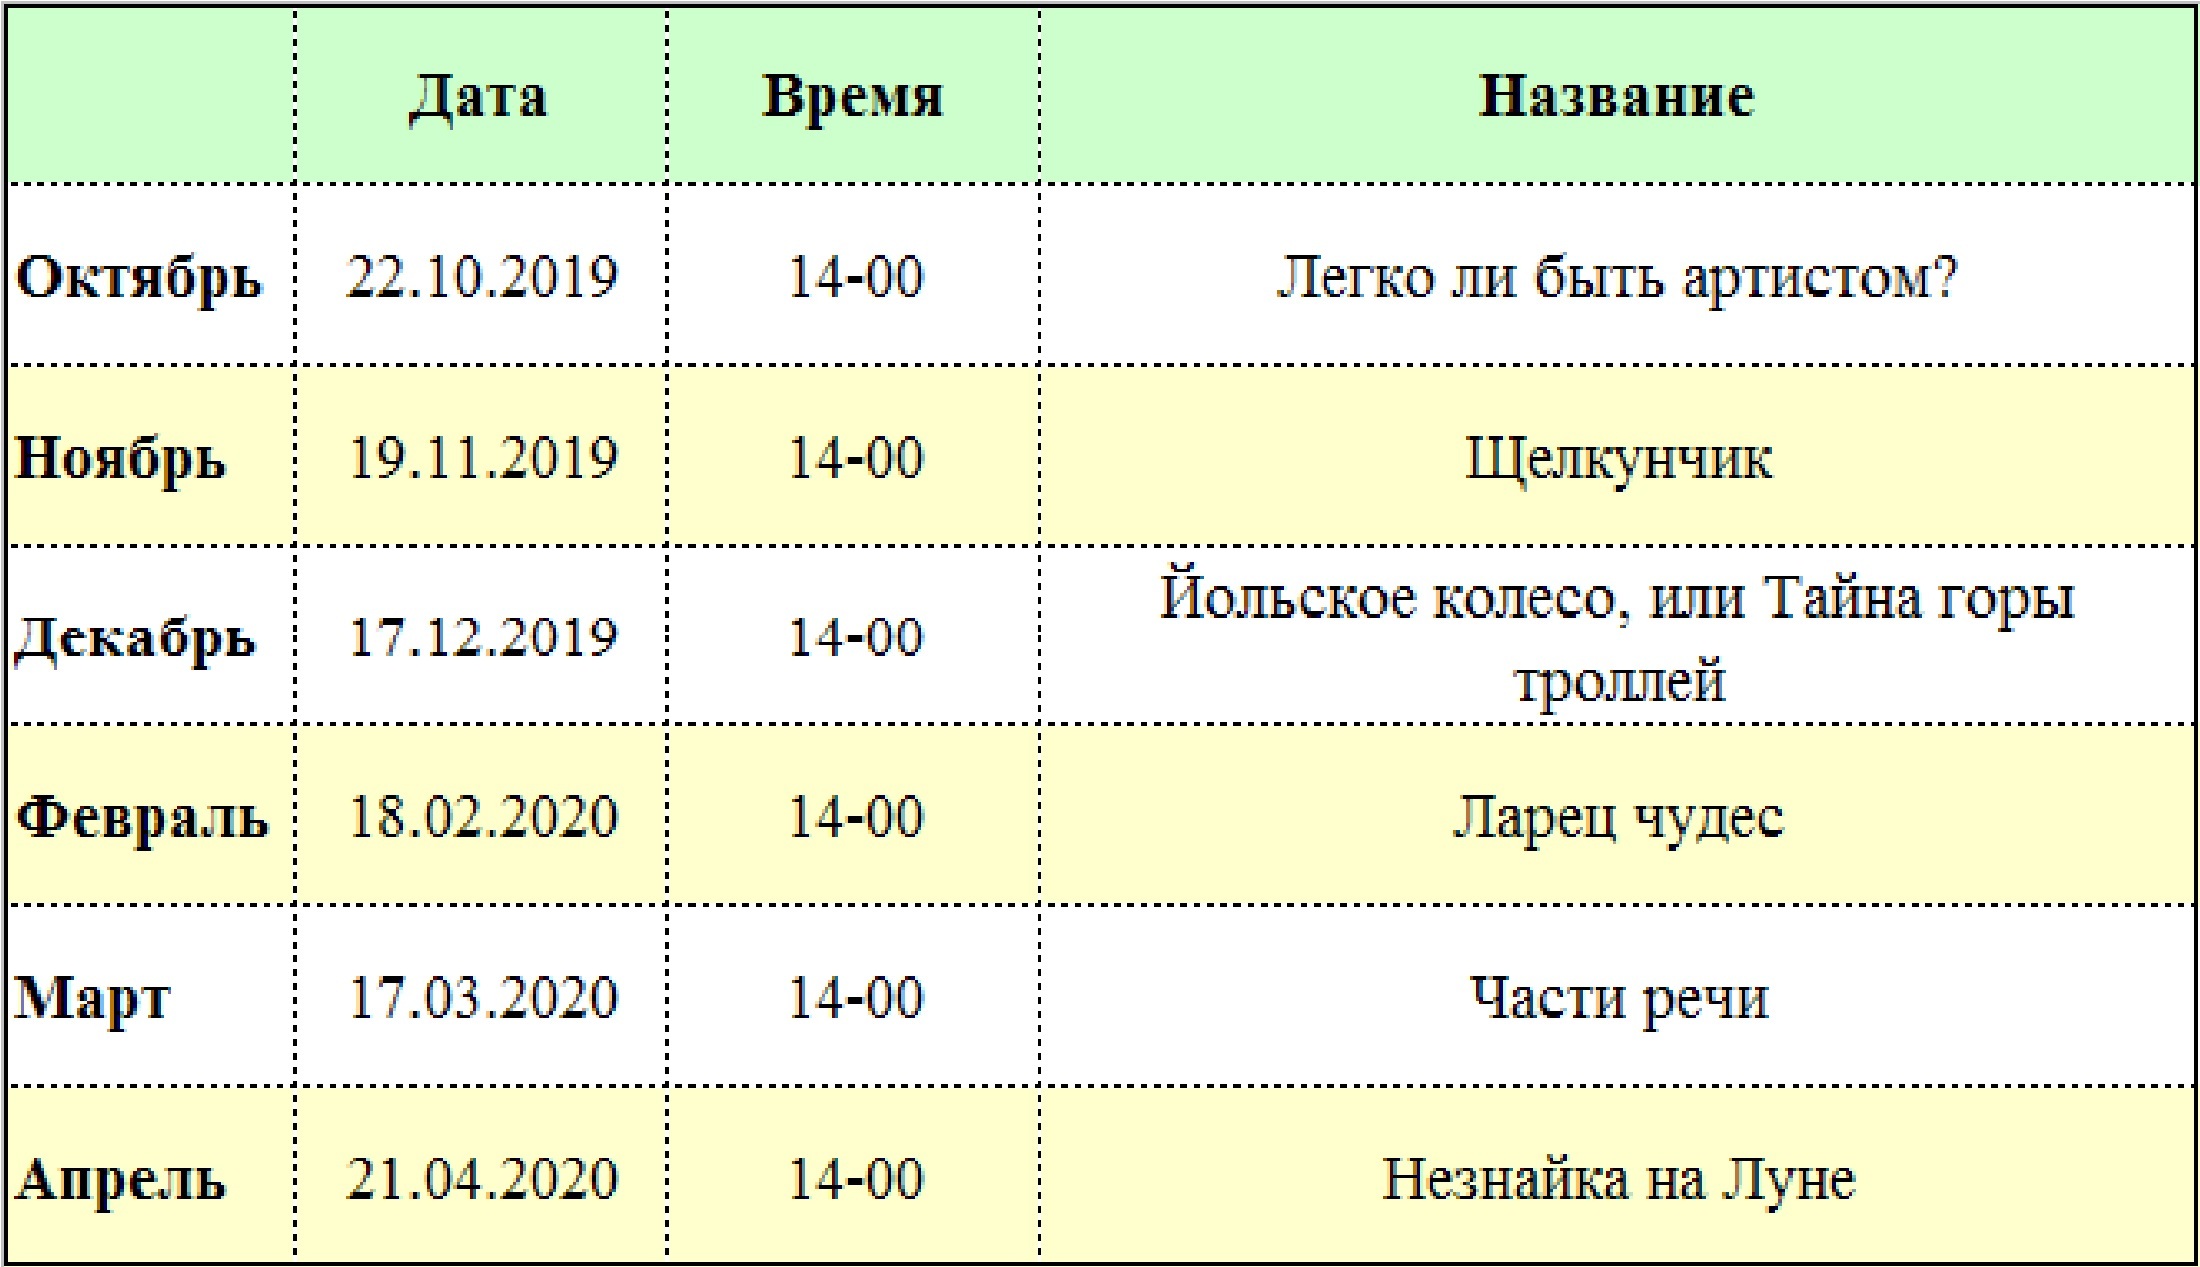 Расписание абонементных спектаклей сезона 2019 - 2020 гг.